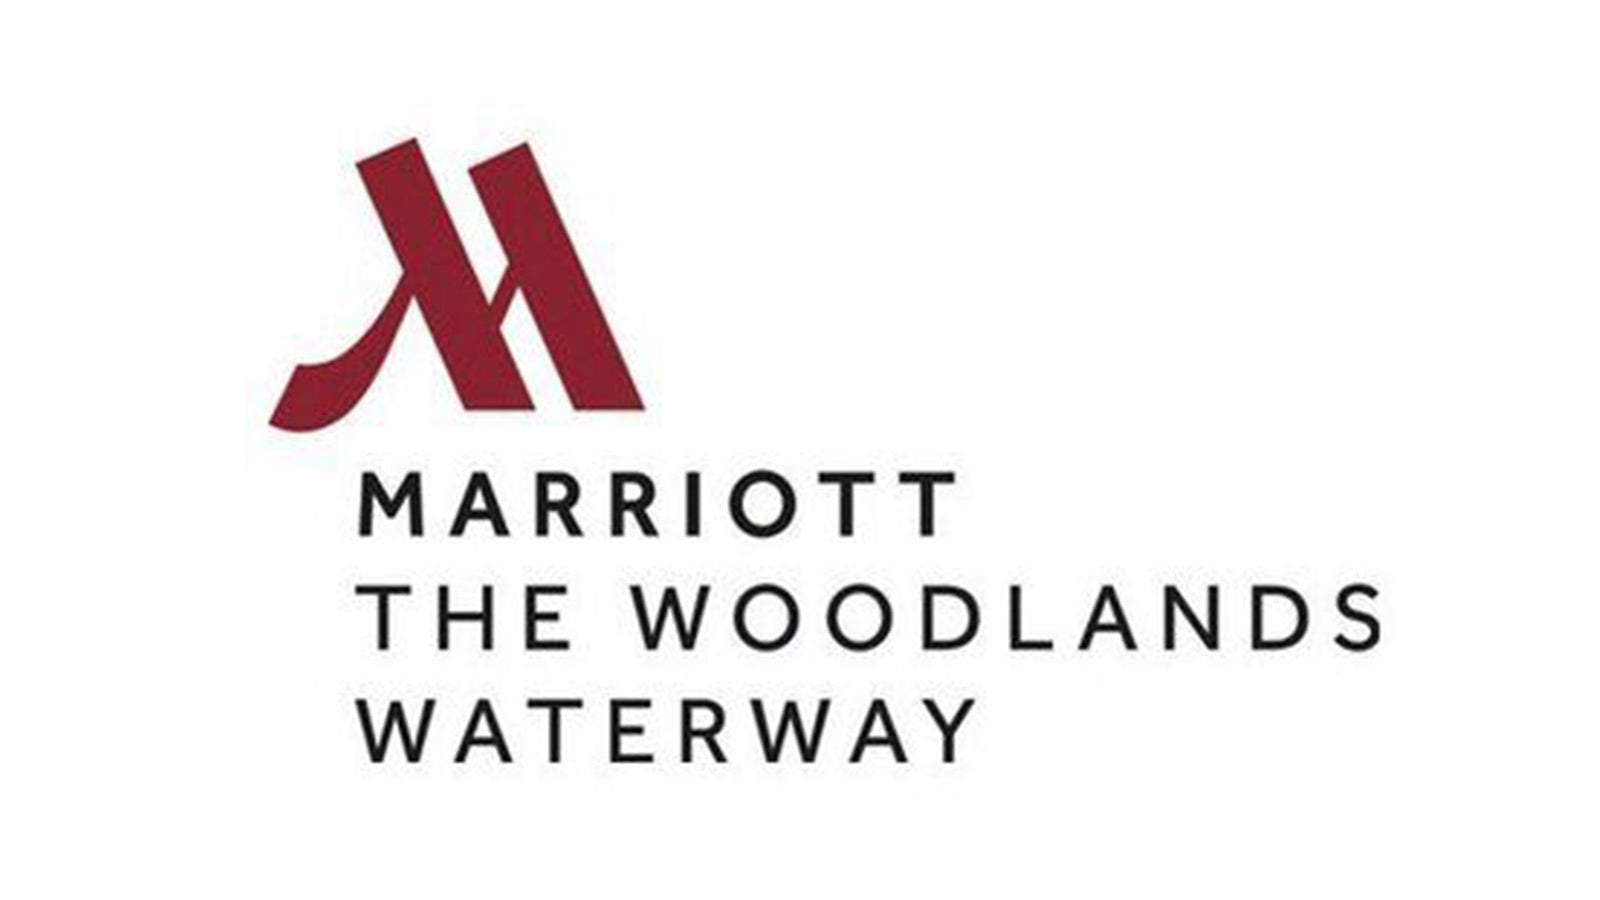 Mariott The Woodlands Waterway